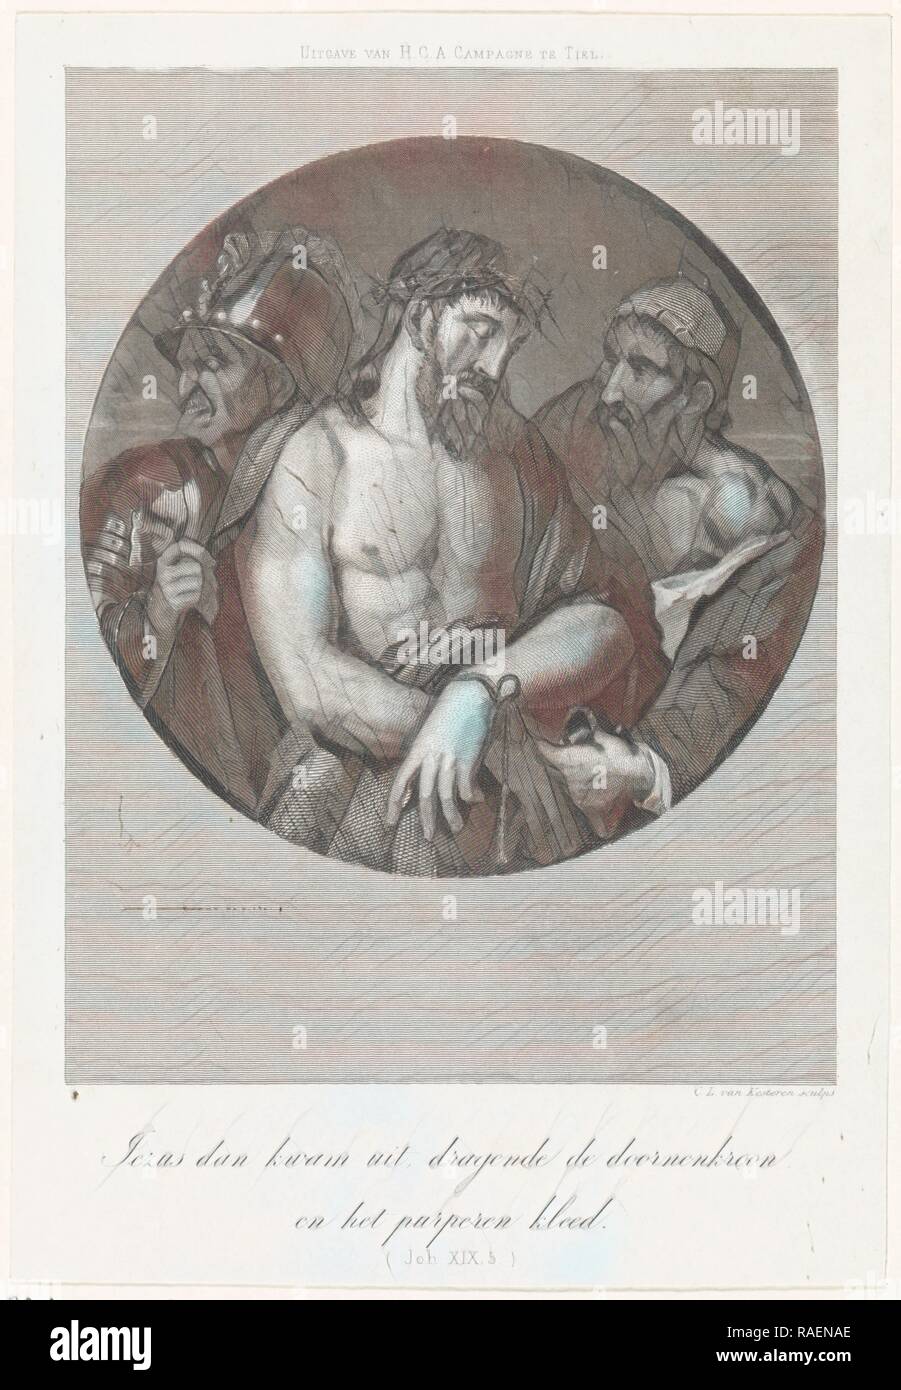 Ecce Homo, Christiaan Lodewijk van Kesteren, H.C.A. Campagne, 1842 - 189. Reinventato da Gibon. Arte Classica con un reinventato Foto Stock